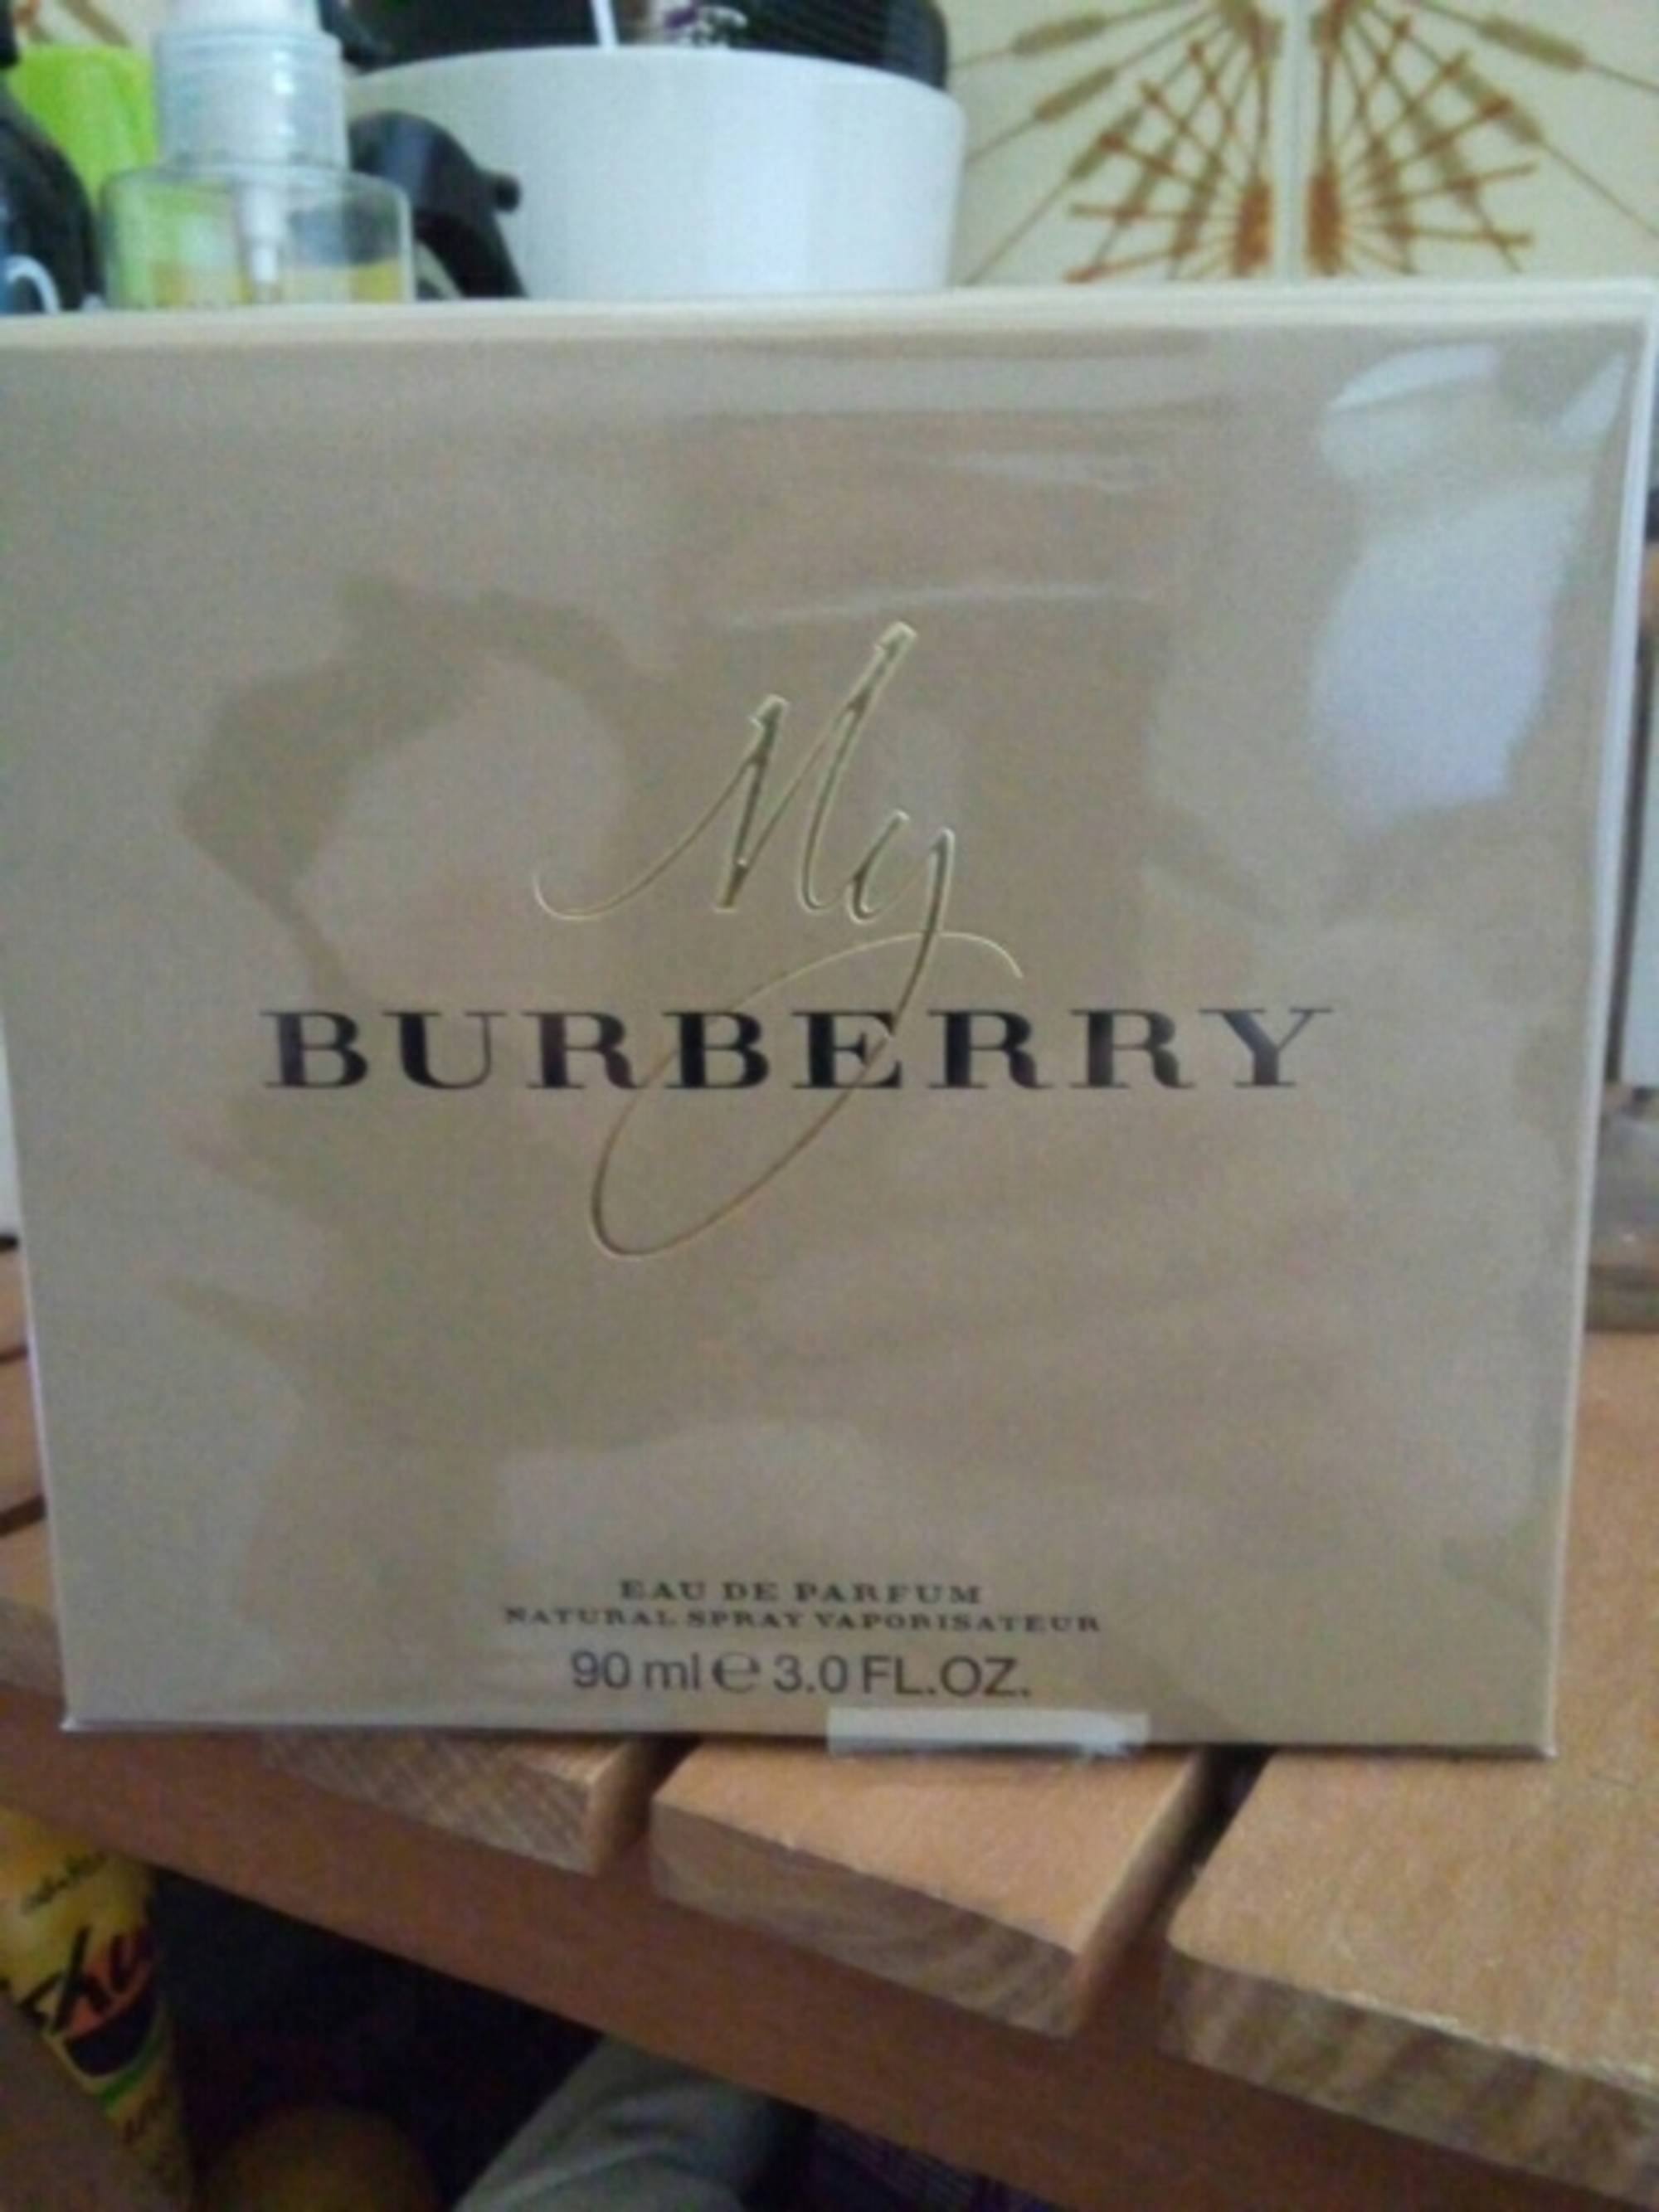 BURBERRY - My burberry - Eau de parfum 